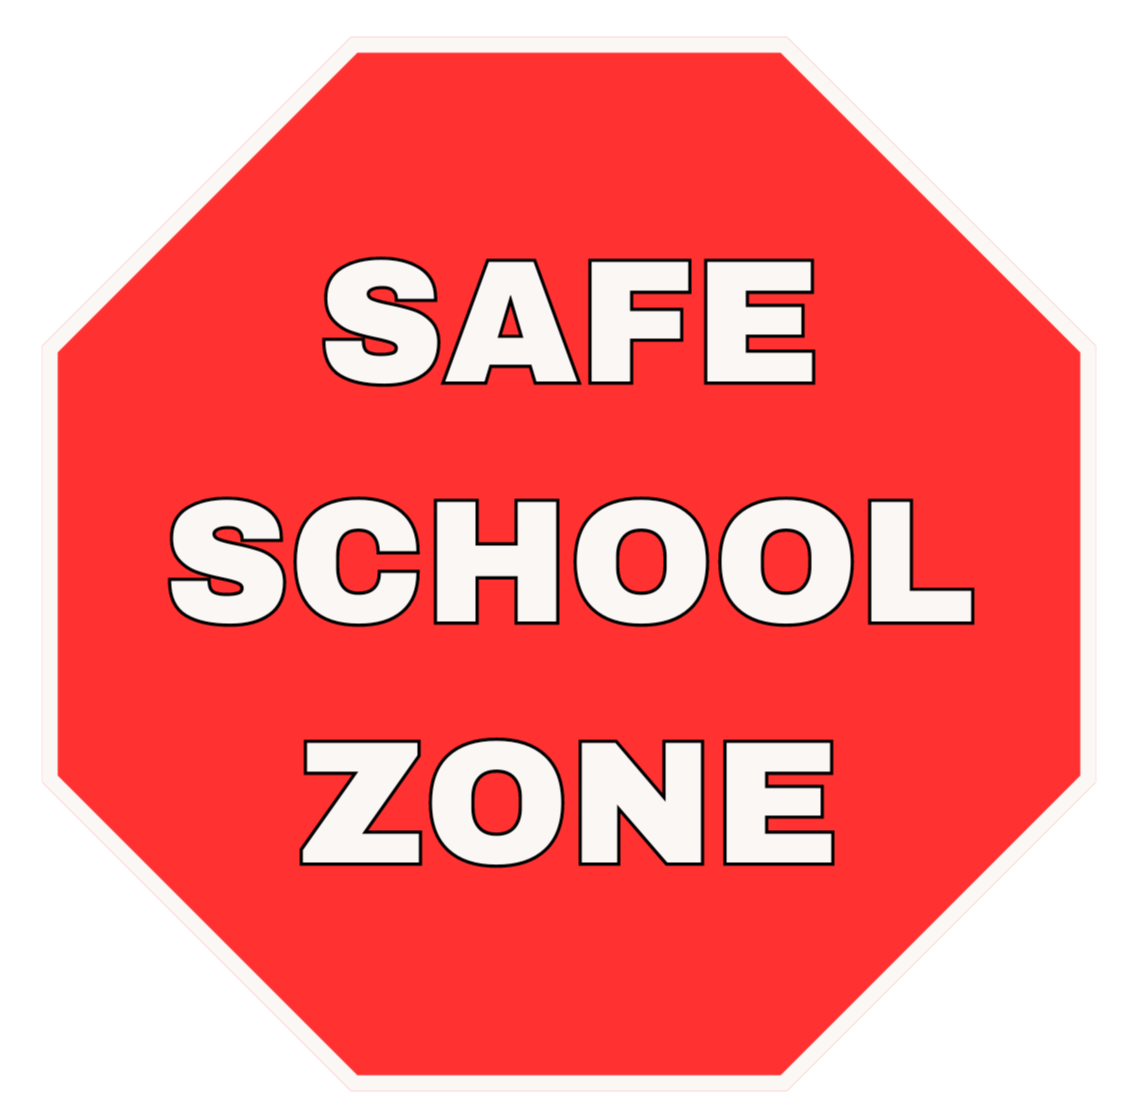 SAFE SCHOOL